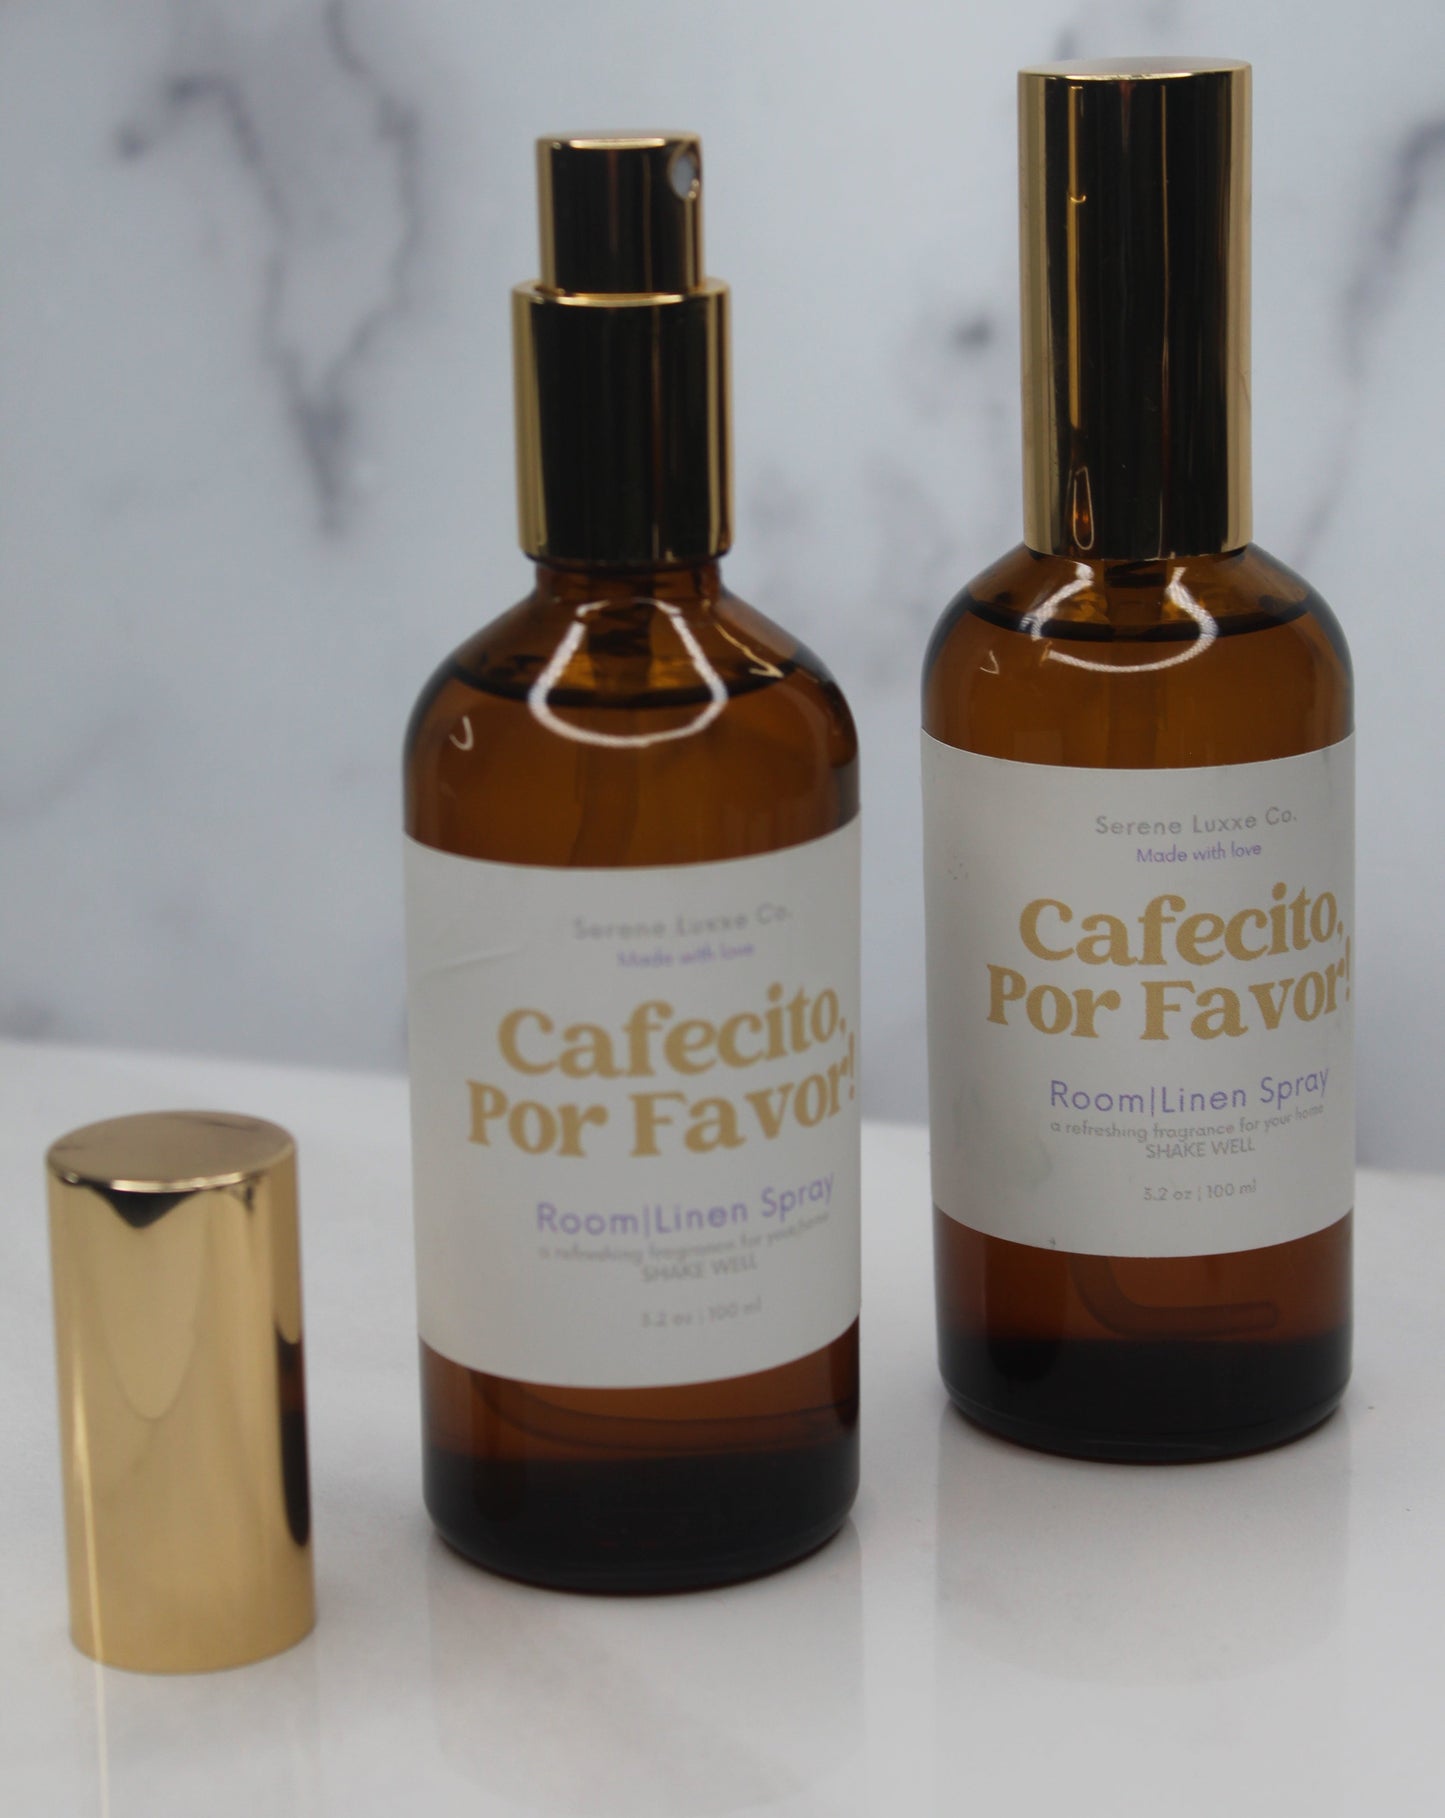 Cafecito, Por Favor! Room/Linen Spray